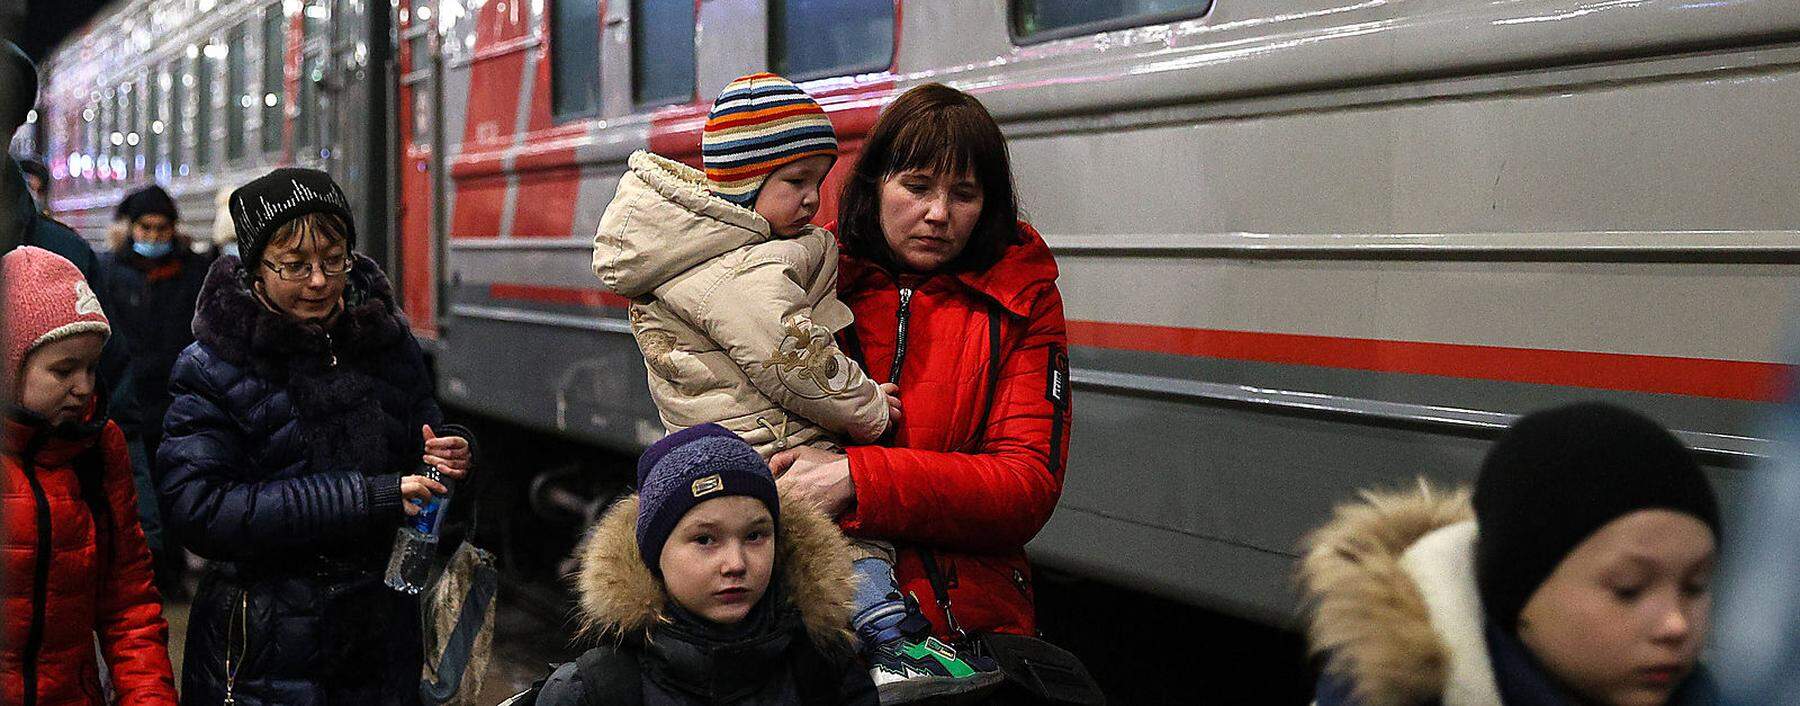 Aus den von Separatisten kontrollierten Gebieten in Sicherheit gebrachte Menschen kommen in der russischen Stadt Nischni Nowgorod an. 